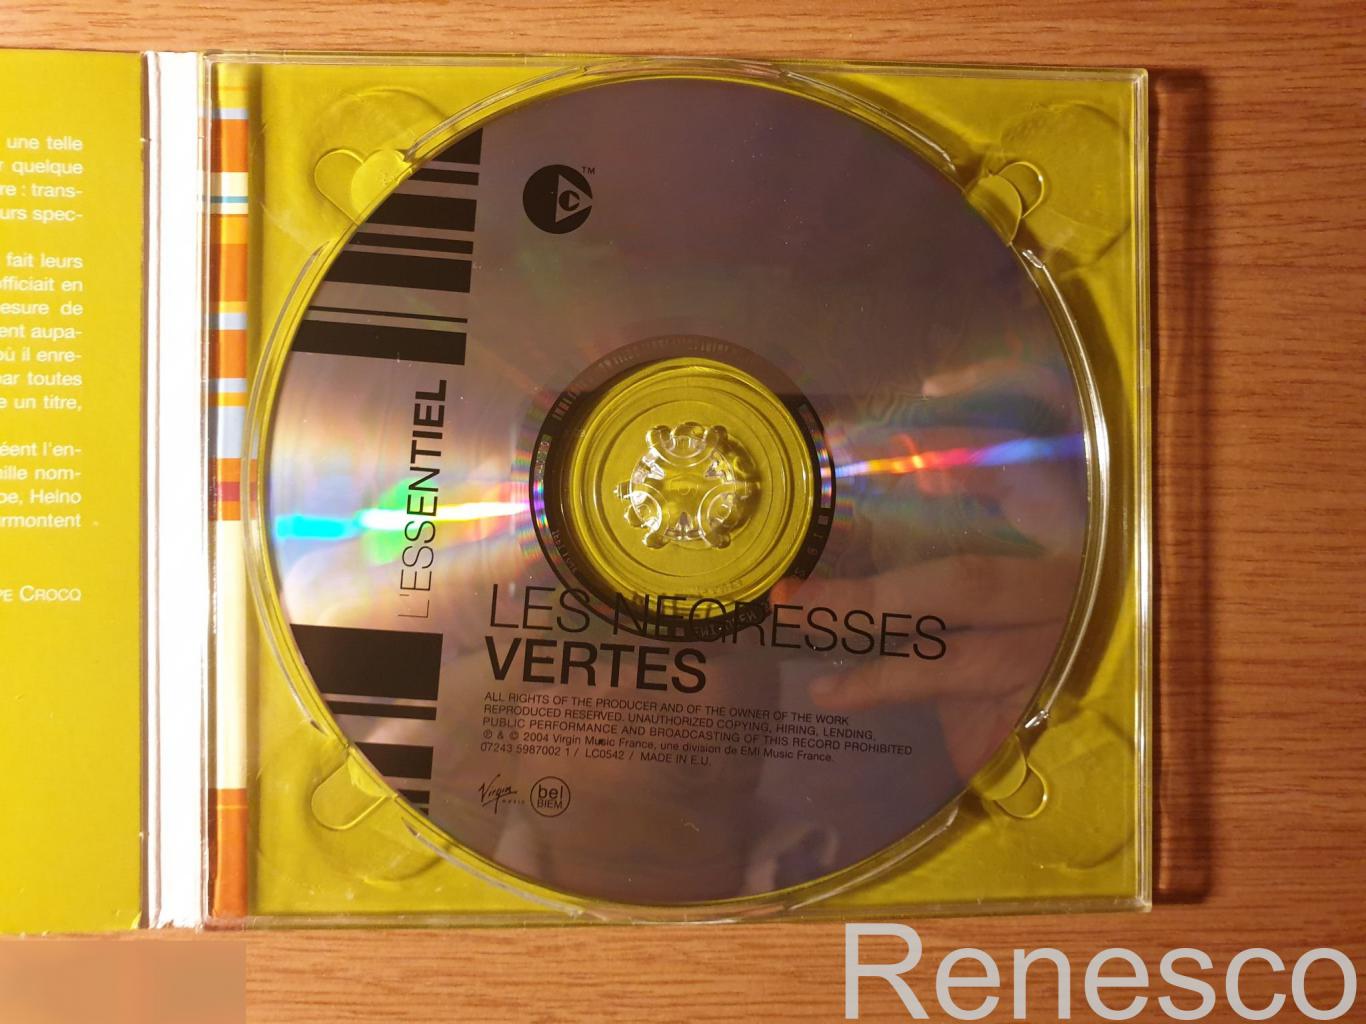 (CD) Les Negresses Vertes ?– L'essentiel (Europe) (2004) 4